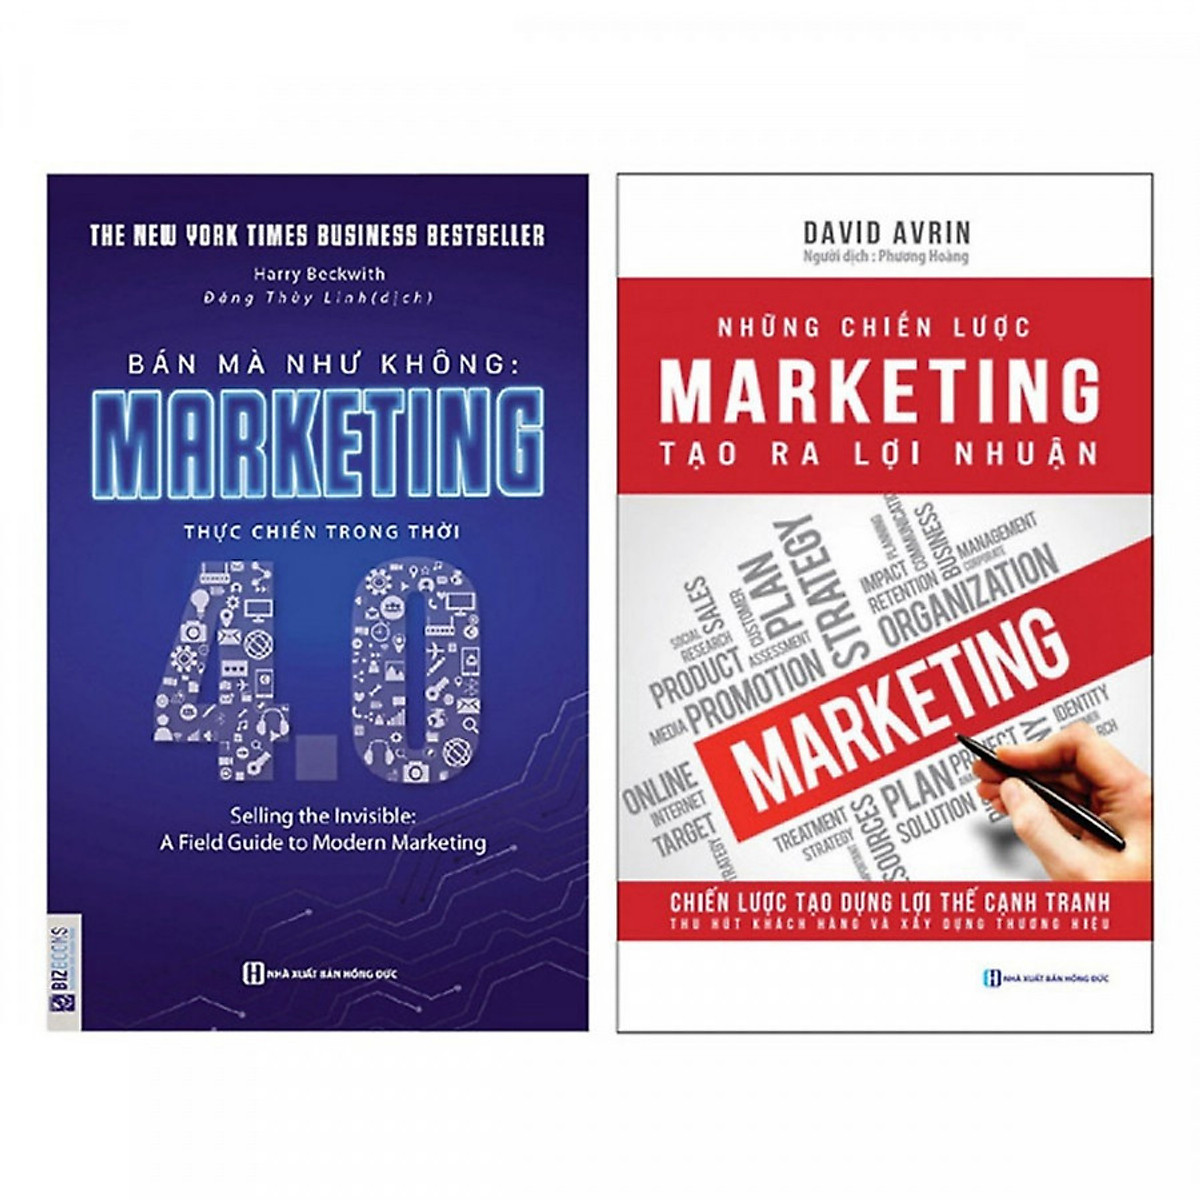 Combo 2 Cuốn Sách Về Marketing Được Ưa Chuộng Nhất Hiện Nay (Bán mà Như không - Marketing thực chiến trong thời 4.0 + Những chiến lược Marketing tạo ra lợi nhuận) + Tặng kèm bookmark